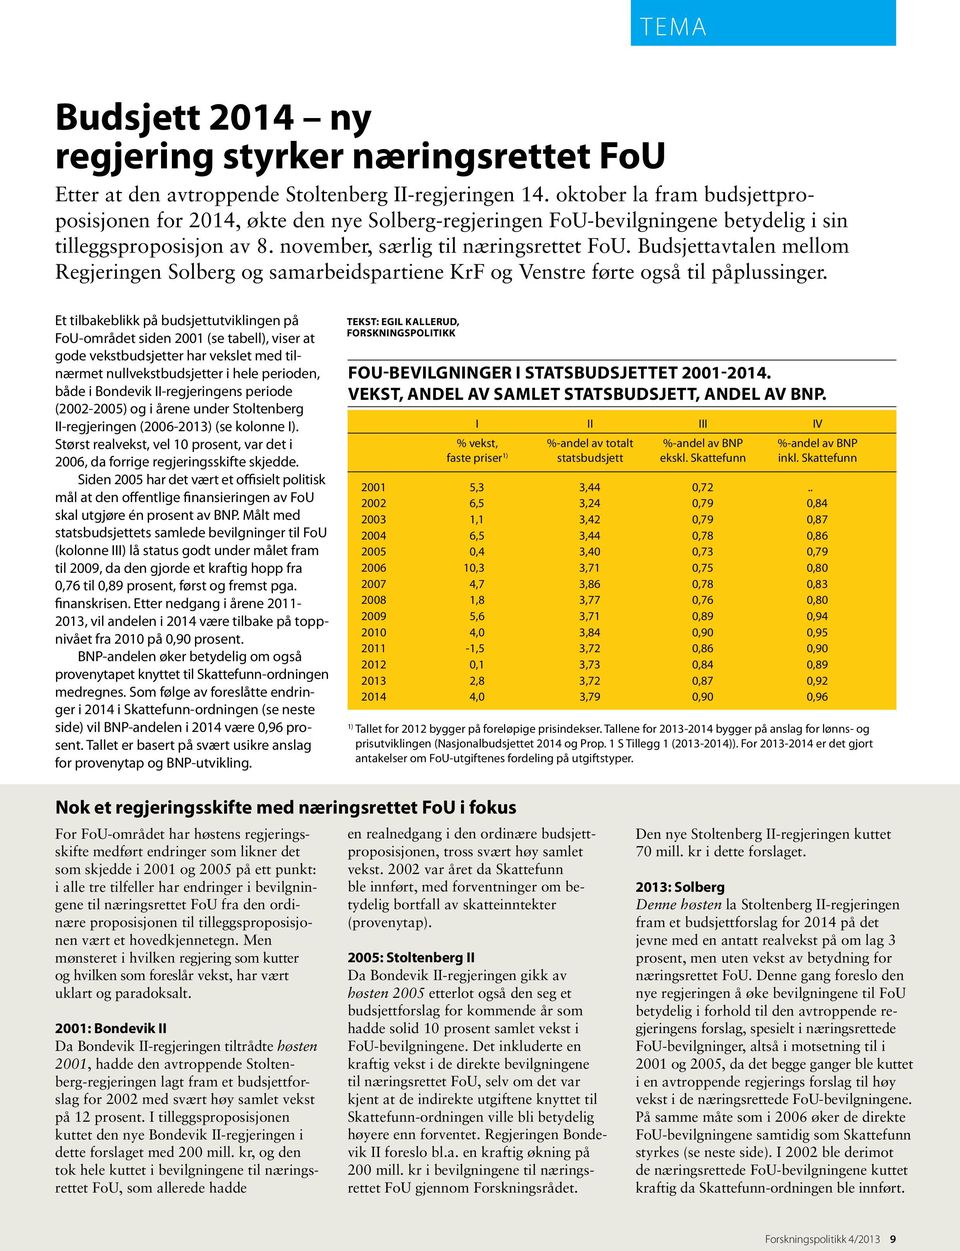 Budsjettavtalen mellom Regjeringen Solberg og samarbeidspartiene KrF og Venstre førte også til påplussinger.